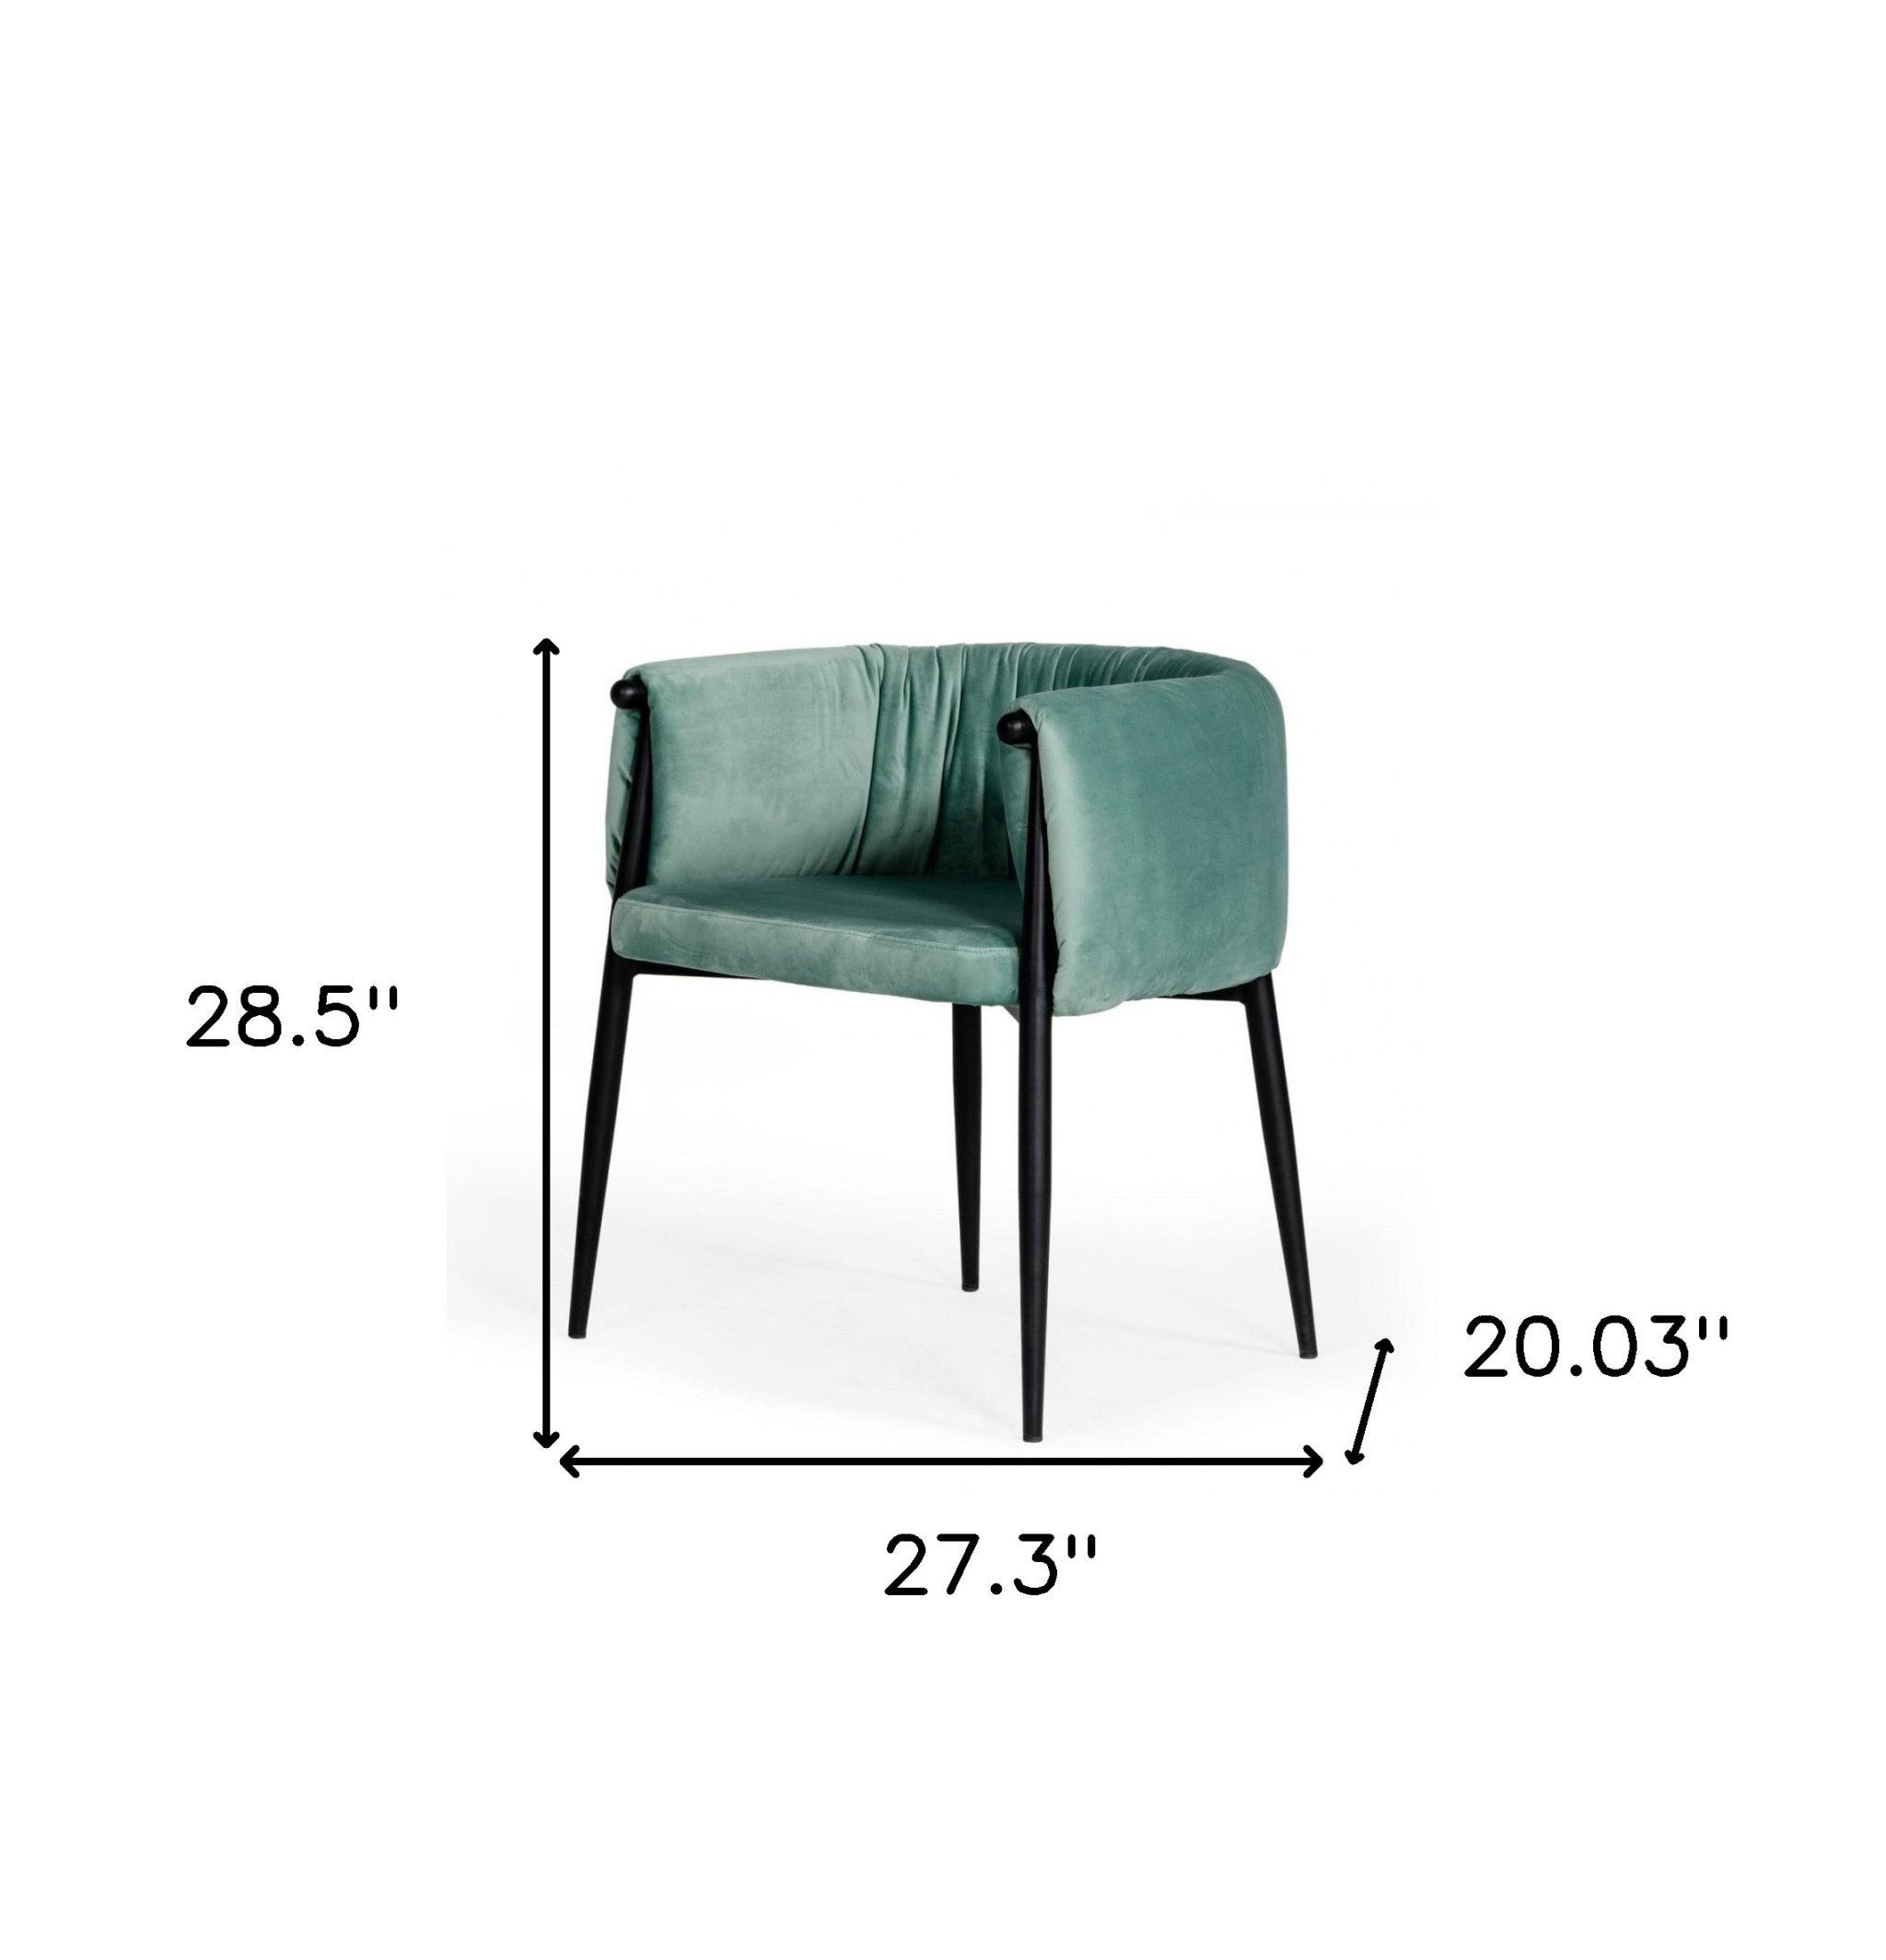 Mod Light Green and Black Velvet Dining or Side Chair